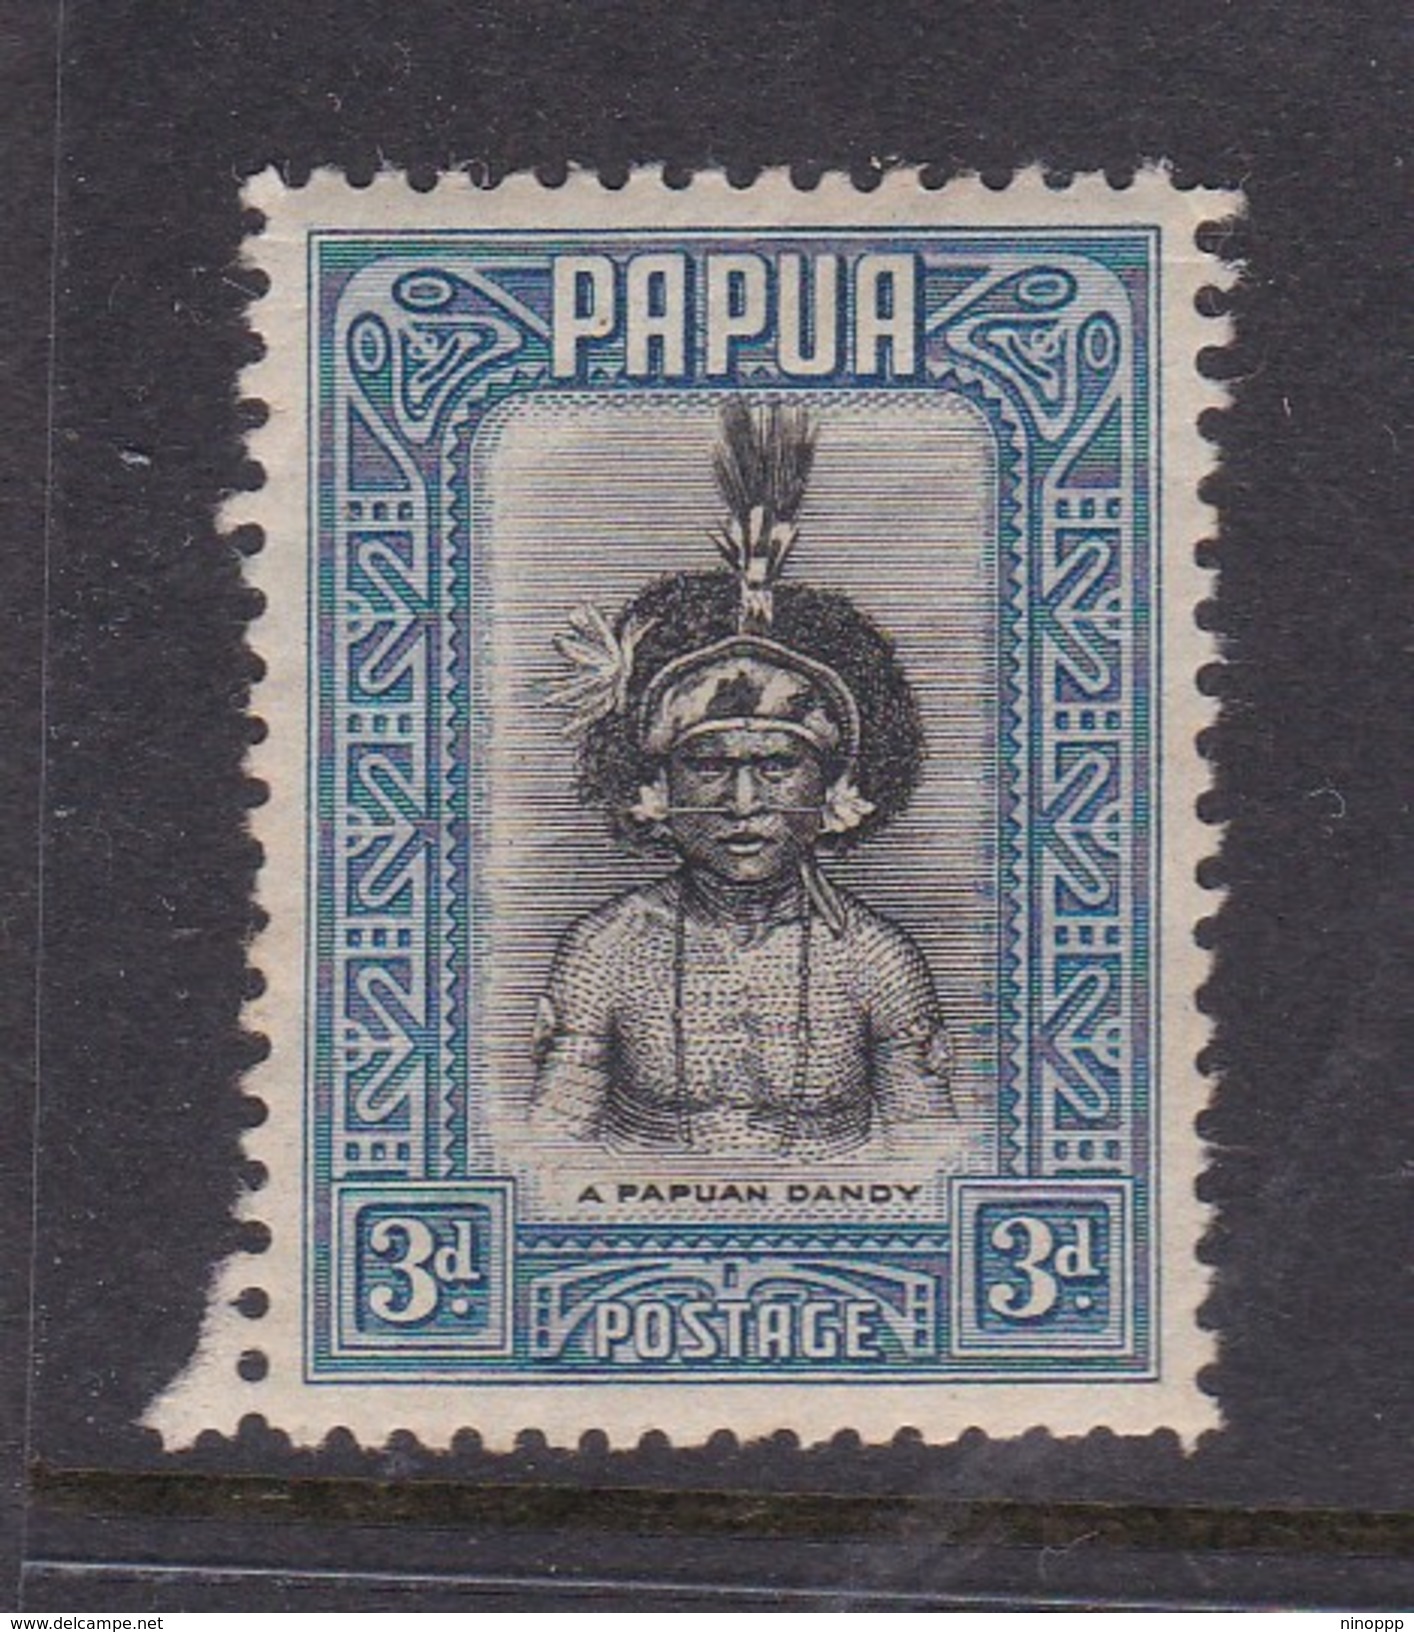 Papua SG 134 1932 Definitives 3d Papuan Dandy Mint Never Hinged - Papoea-Nieuw-Guinea